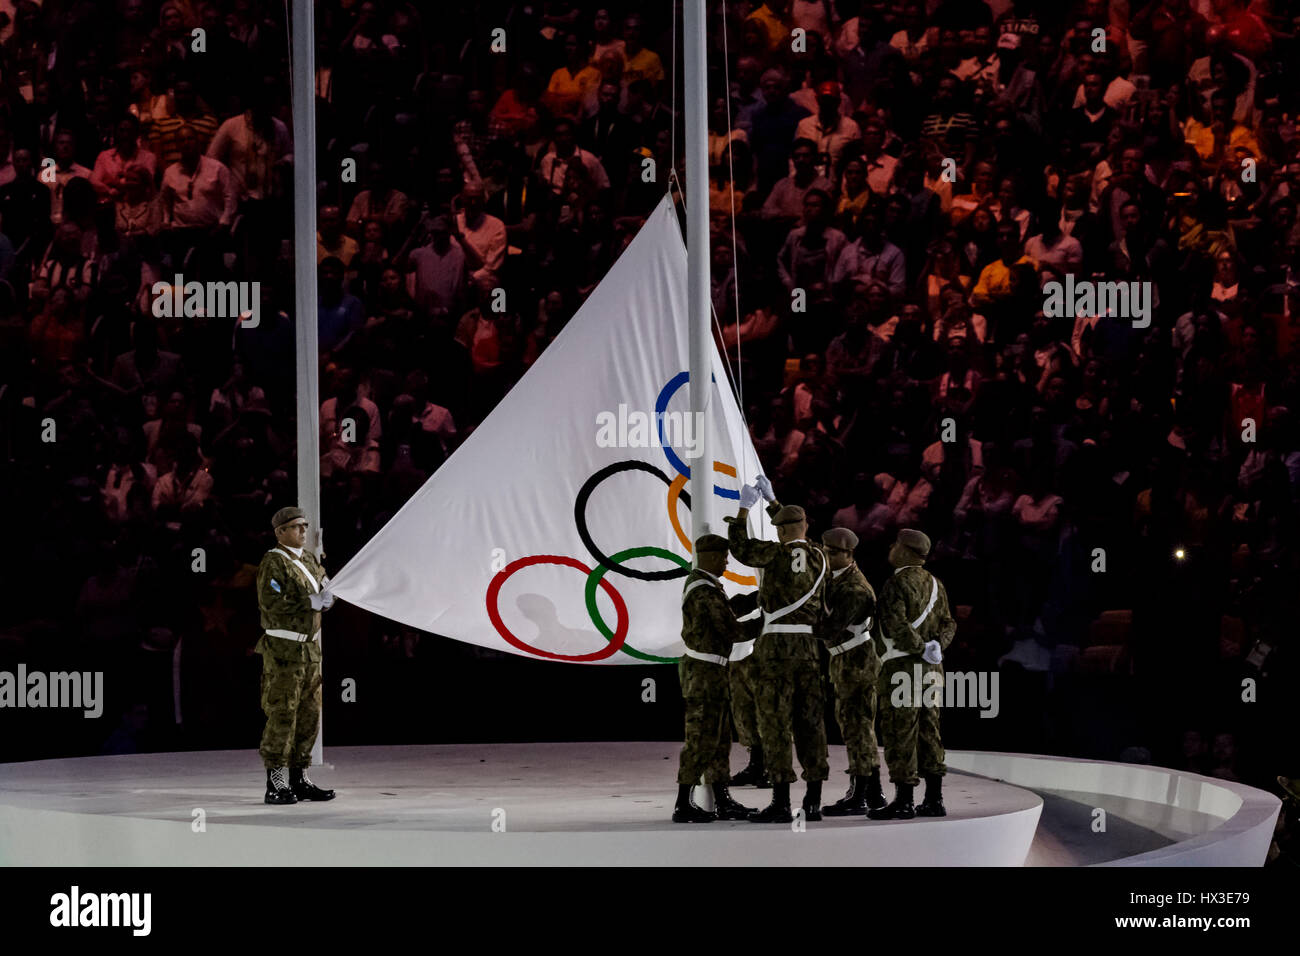 Rio de Janeiro, Brasile. 5 agosto 2016 innalzamento della bandiera olimpica alla Olimpiadi estive di cerimonie di apertura. ©Paul J. Sutton/NCP Fotografia. Foto Stock